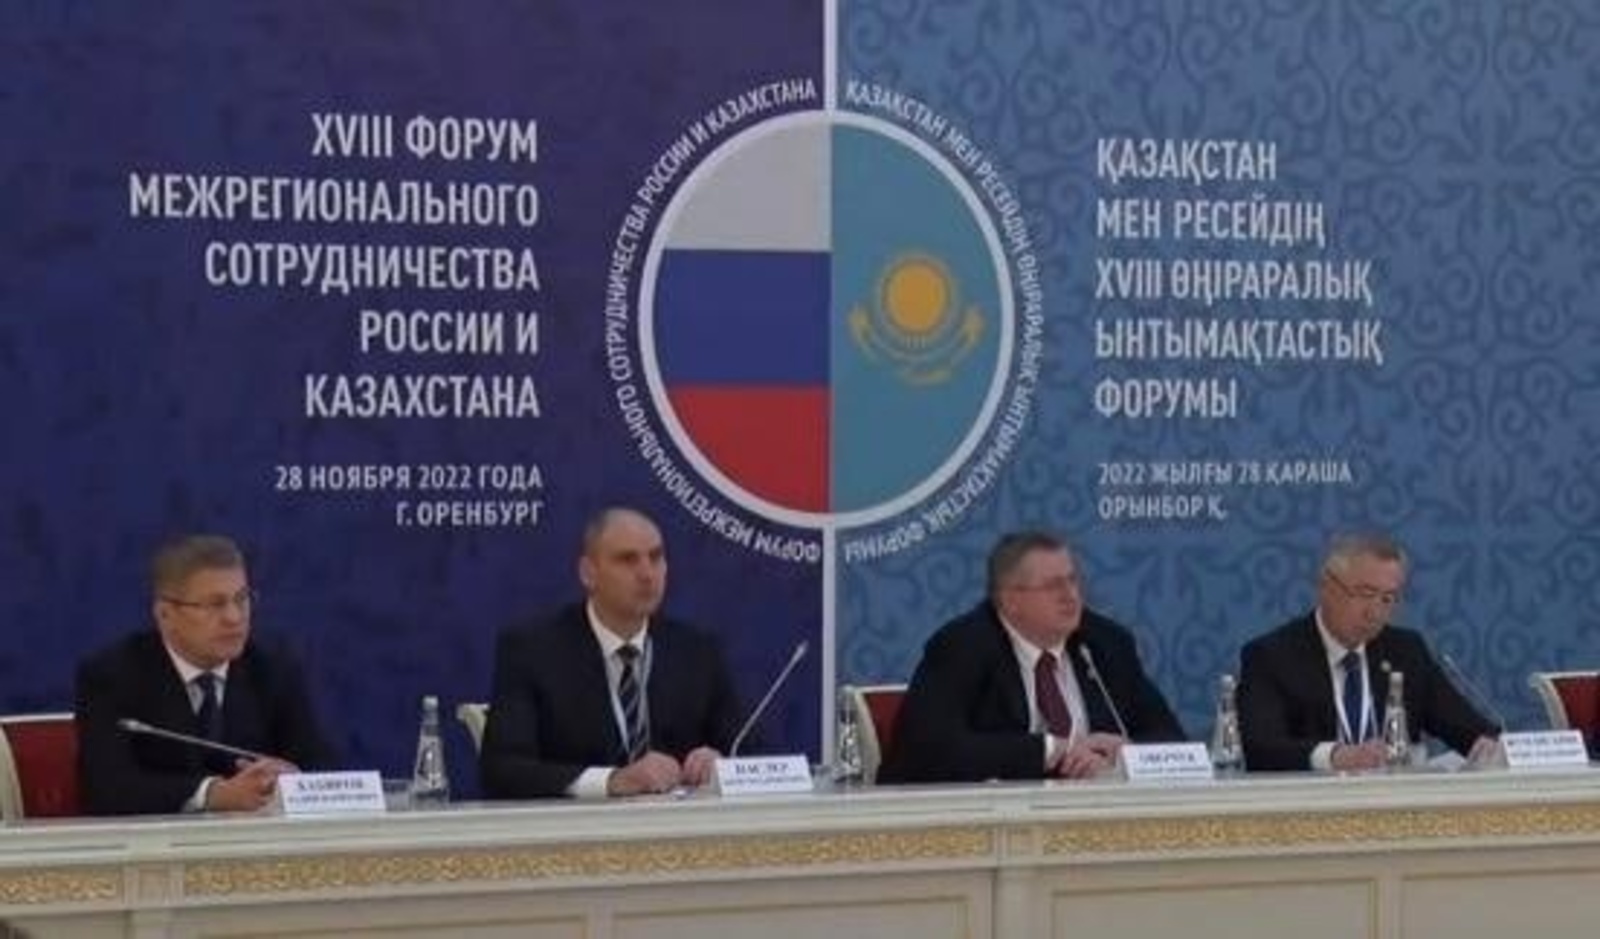 Глава Башкирии высоко оценил результаты и дальнейшие перспективы сотрудничества республики с казахстанскими партнерами